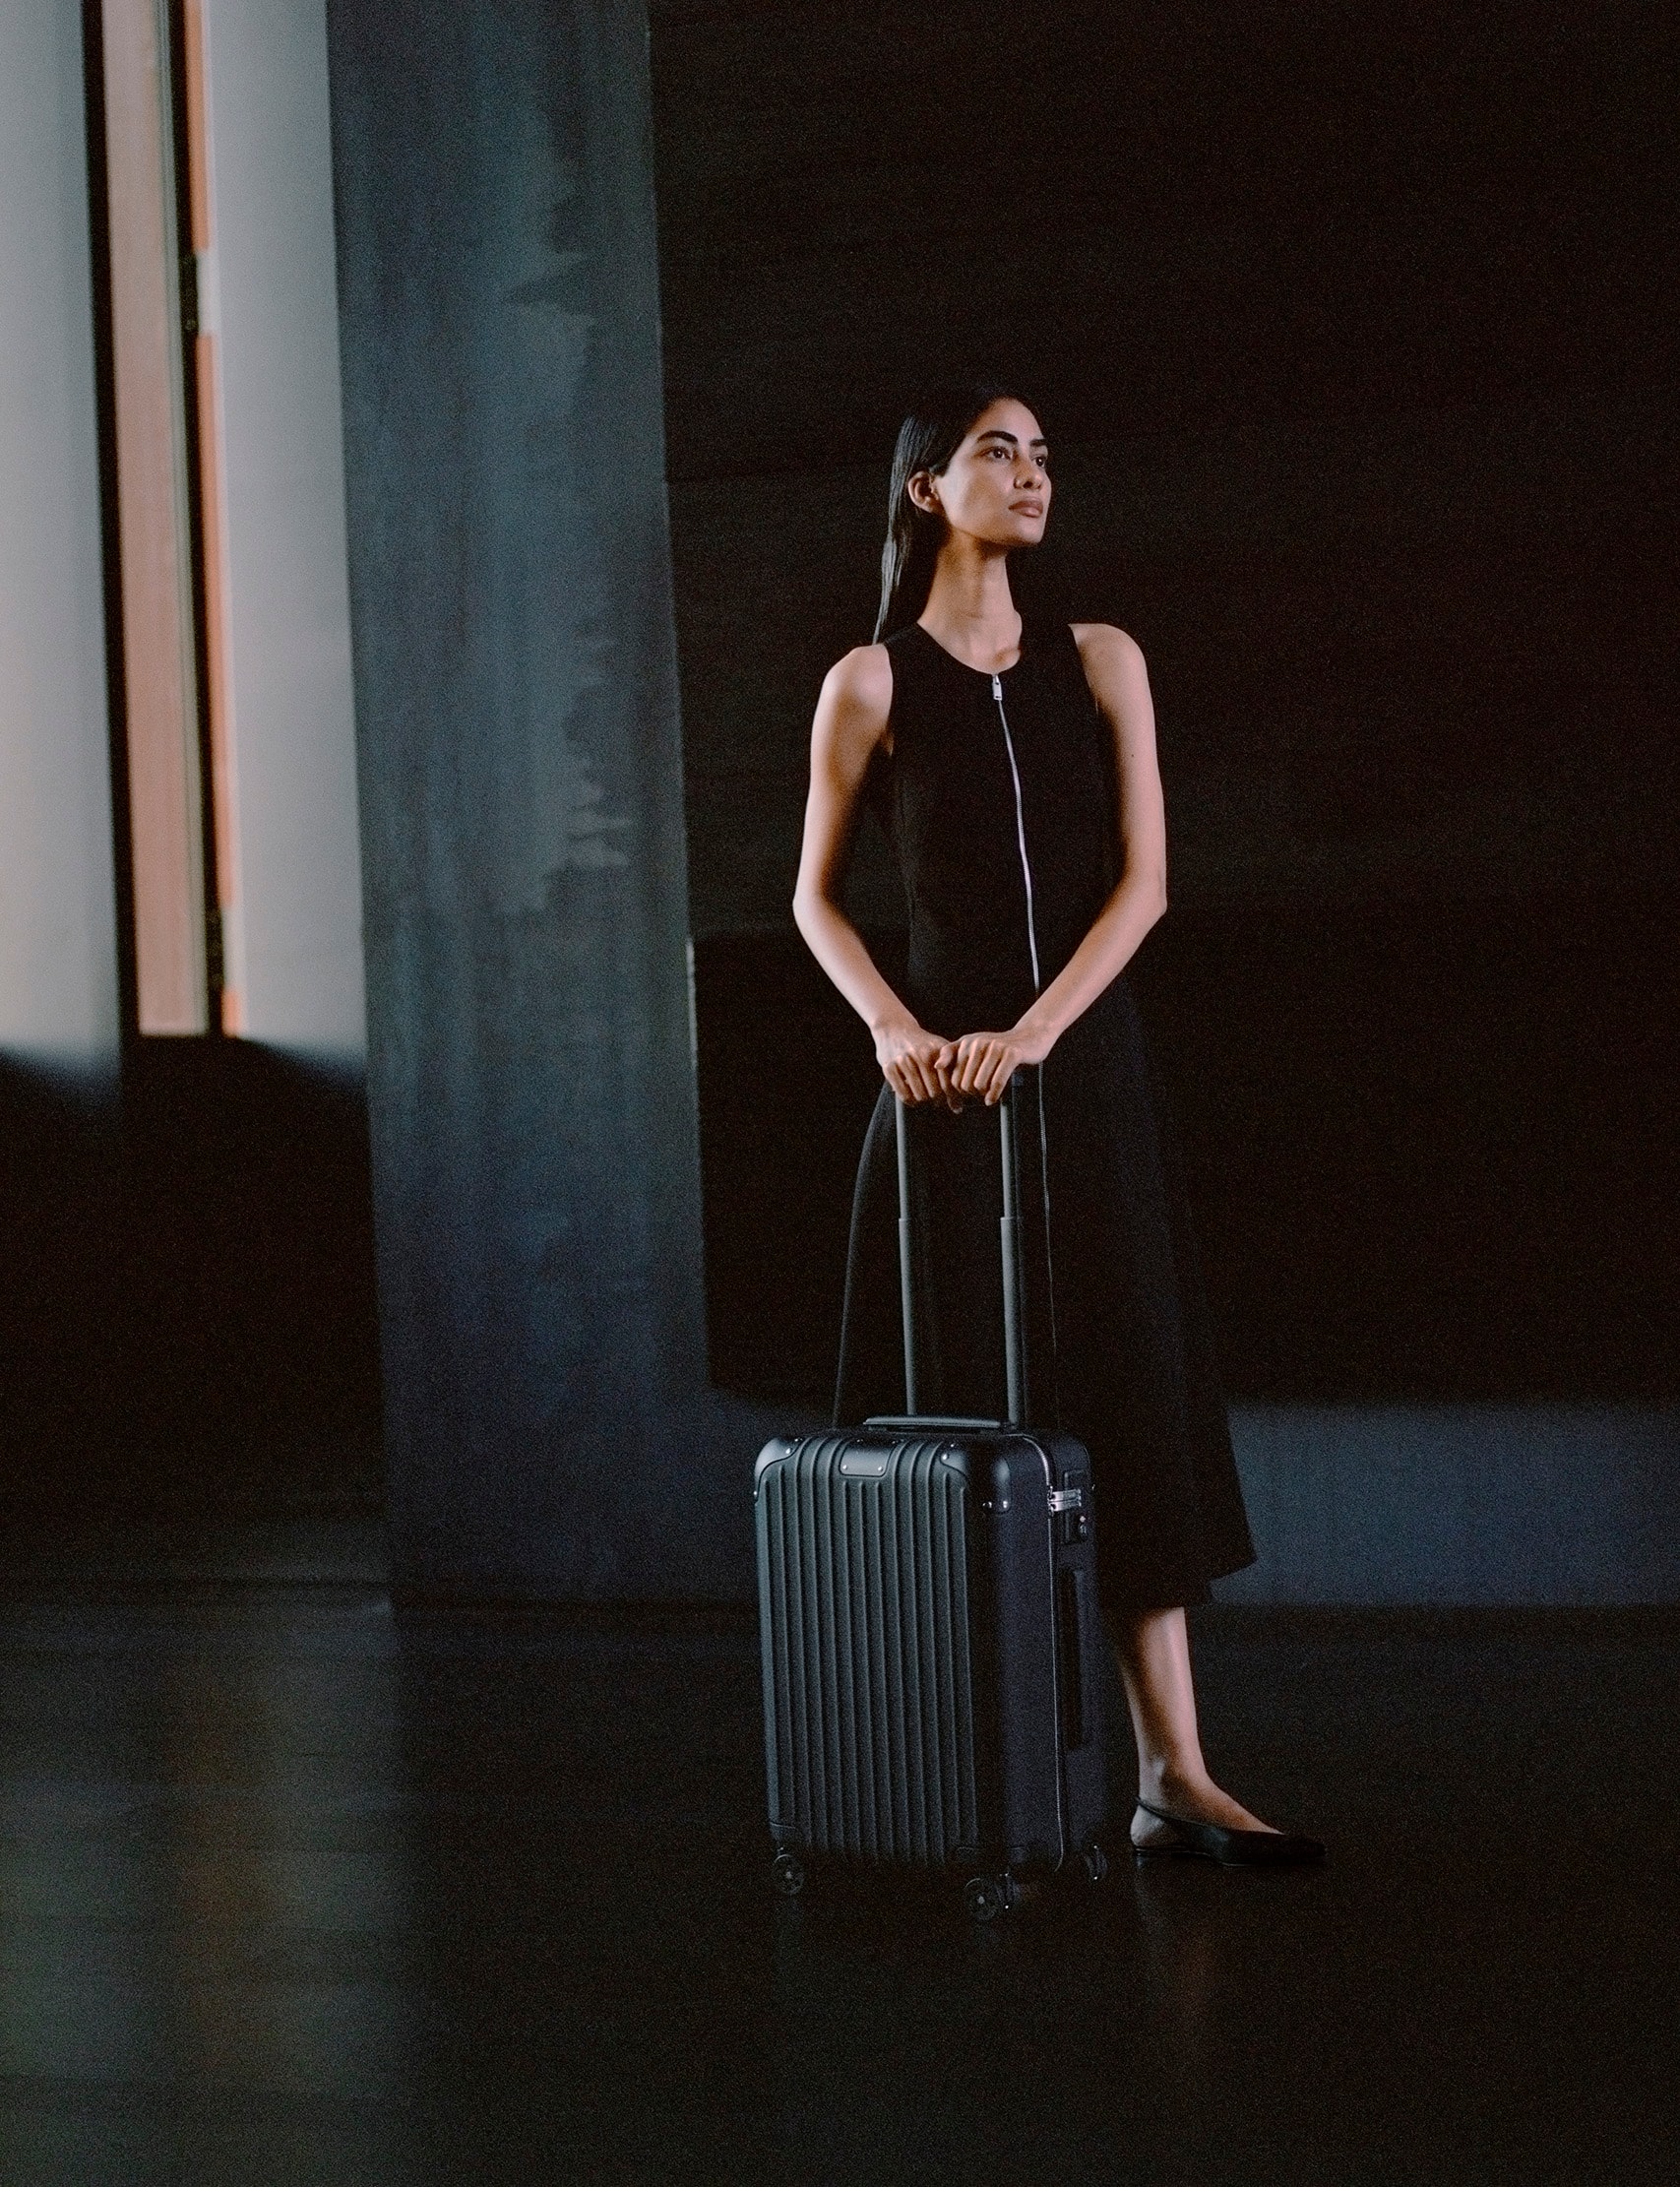 RIMOWA 正式推出全新皮革行李箱系列